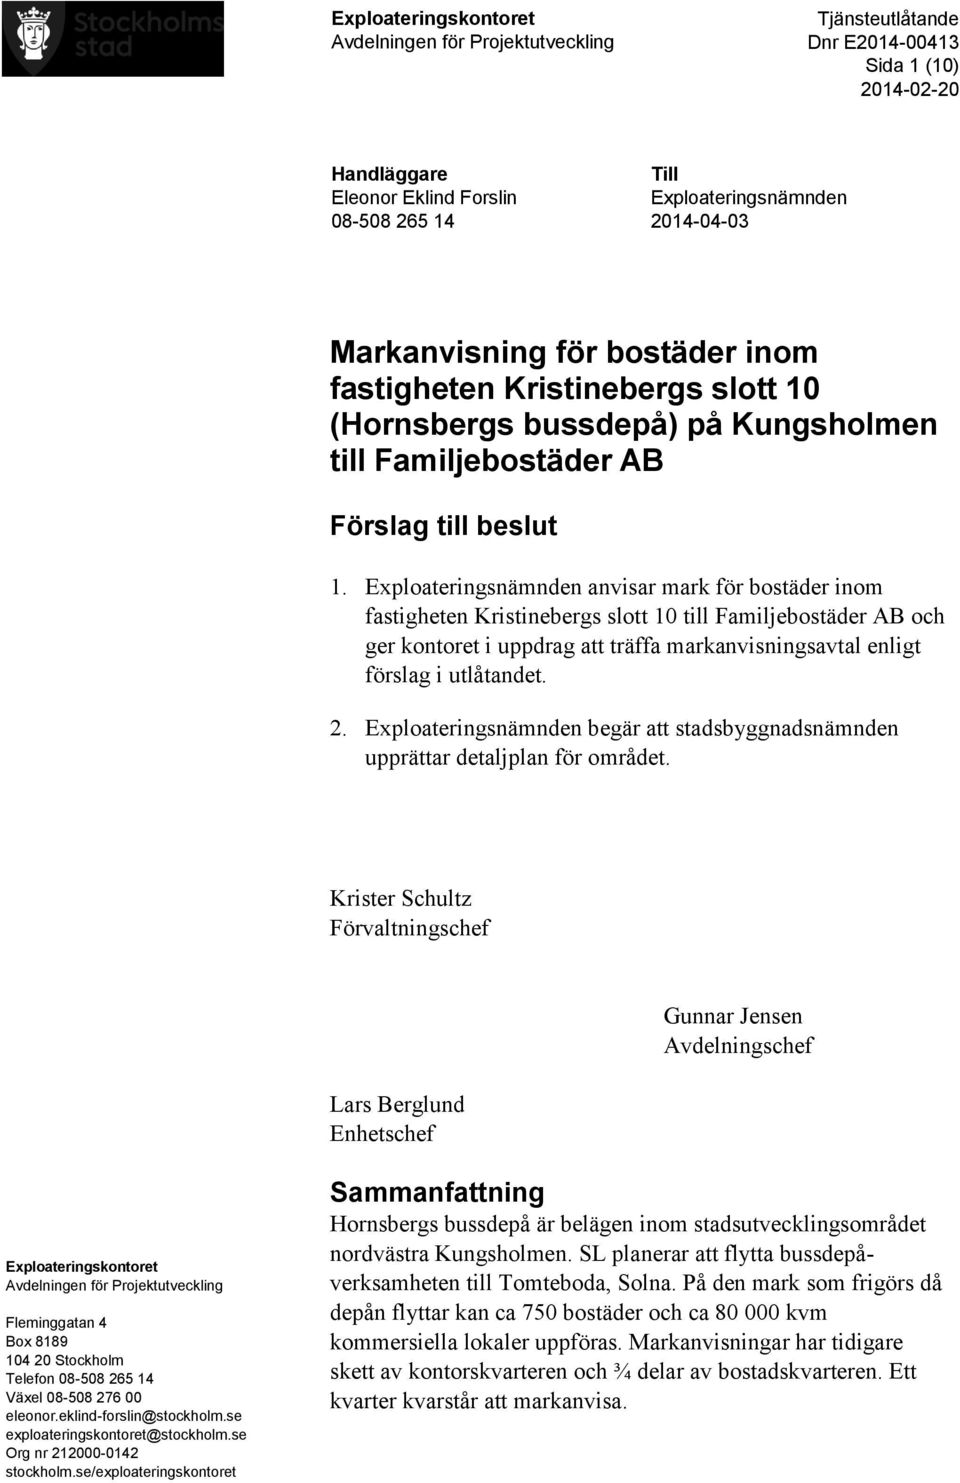 Exploateringsnämnden anvisar mark för bostäder inom fastigheten Kristinebergs slott 10 till Familjebostäder AB och ger kontoret i uppdrag att träffa markanvisningsavtal enligt förslag i utlåtandet. 2.